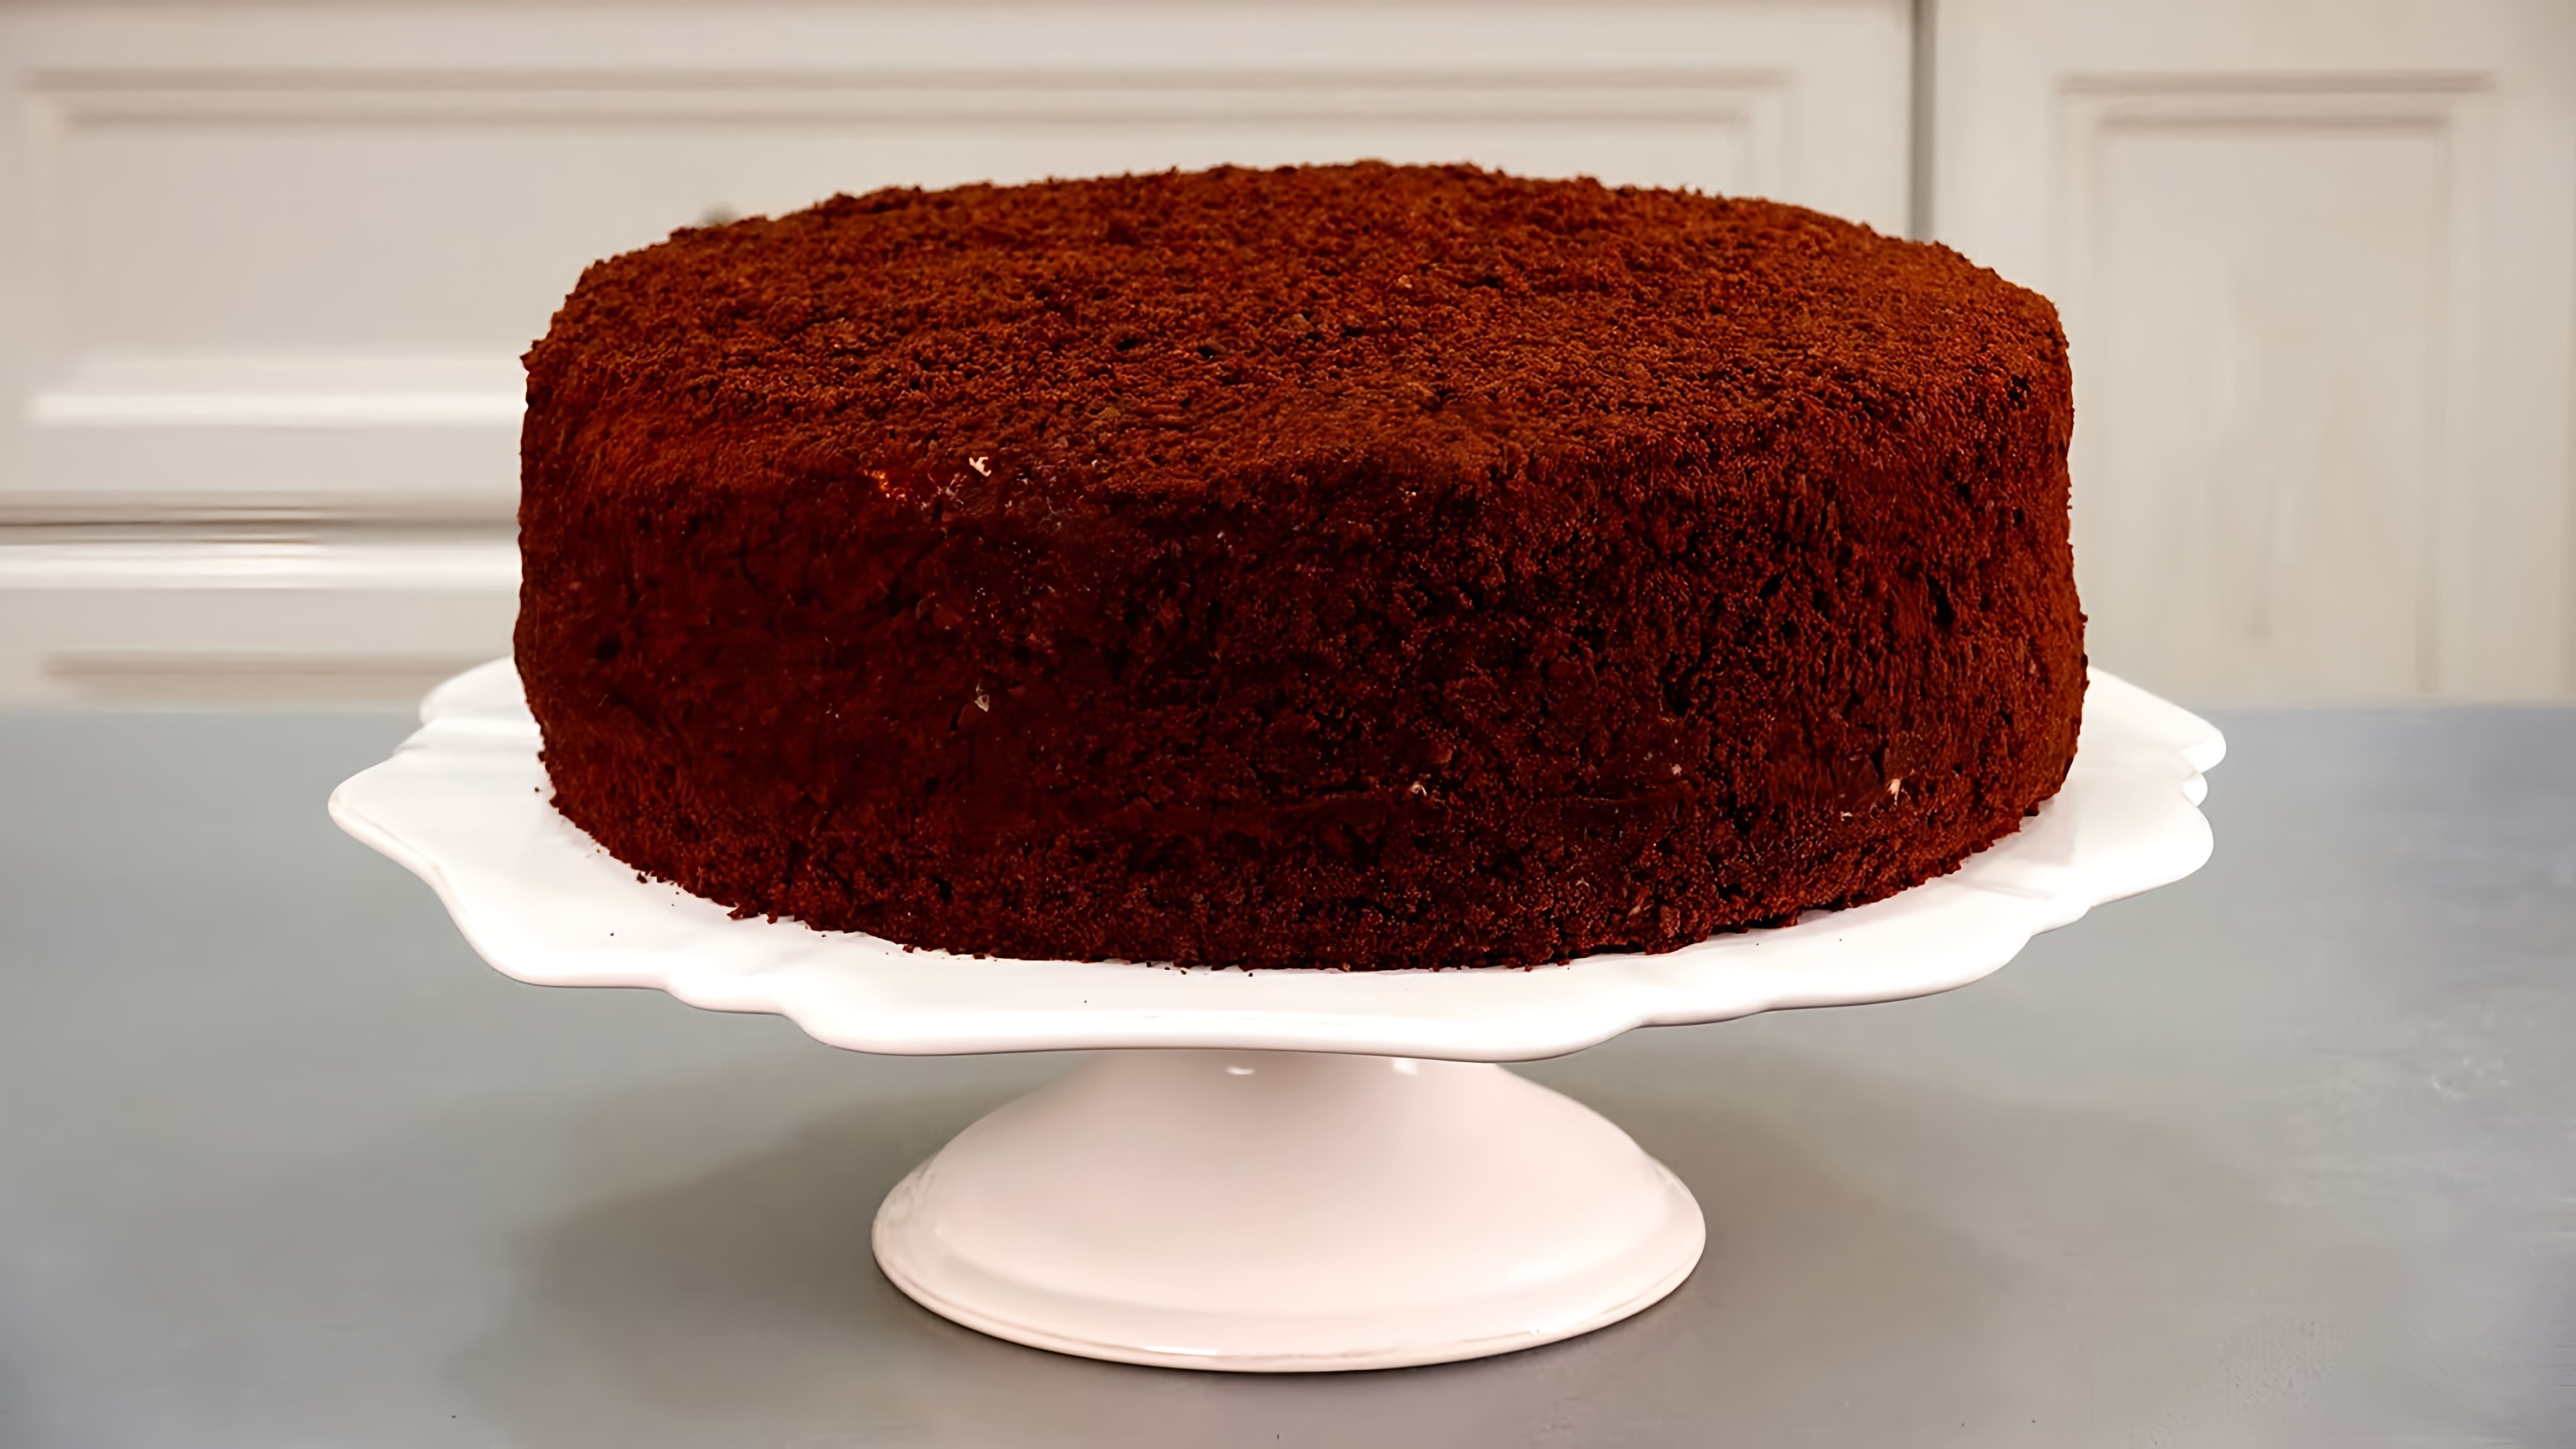 В этом видео демонстрируются три вкусных и простых рецепта тортов: торт "Спартак", чизкейк карамельный и торт "Полено"